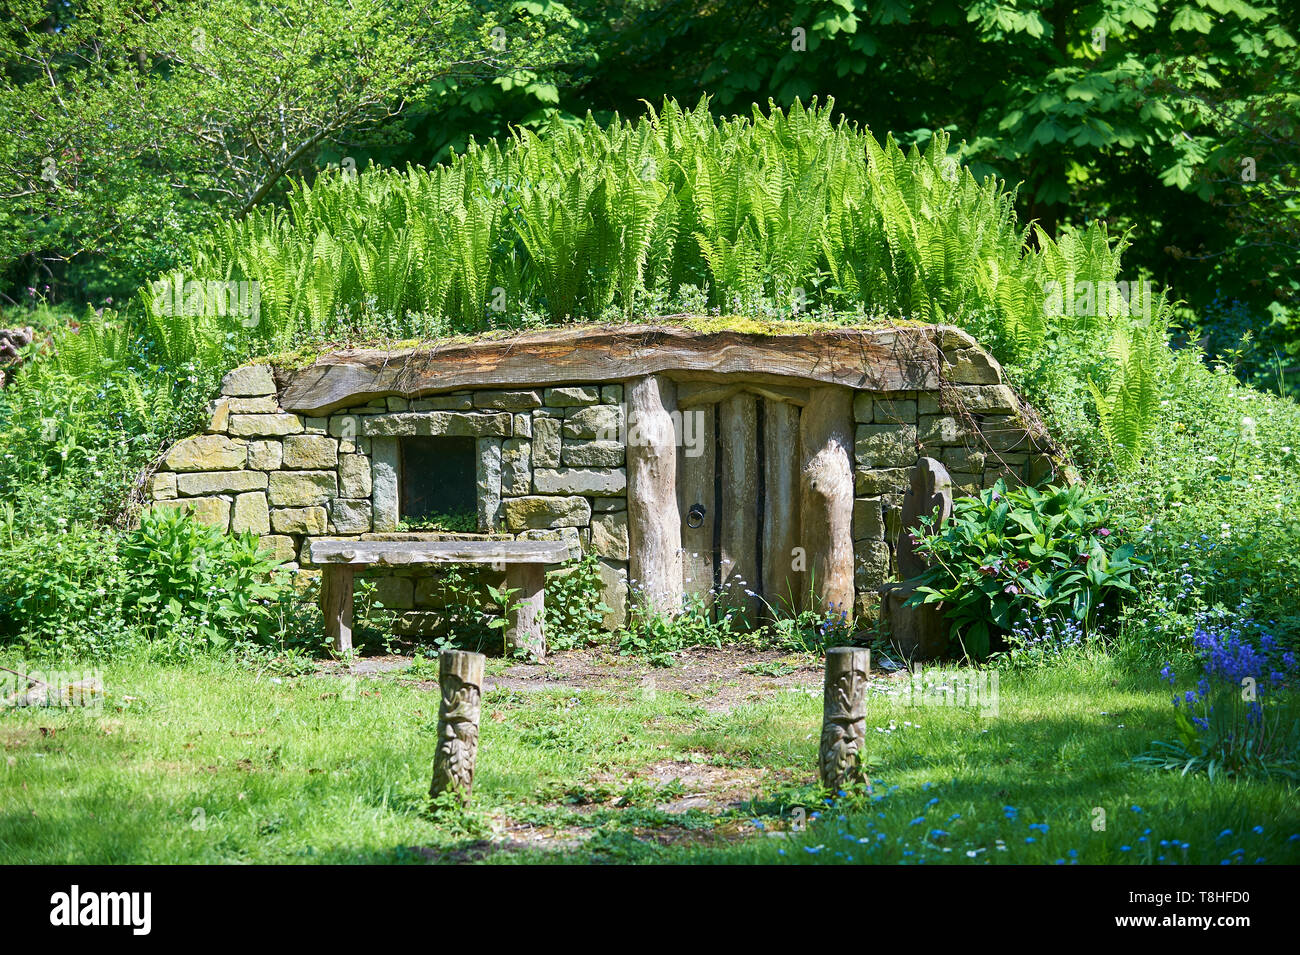 Maison de Hobbits avec le printemps de fougères et de jacinthes (Hyacinthoides non-scripta ) croître autour de lui. East Riding of Yorkshire, UK, FR. Banque D'Images